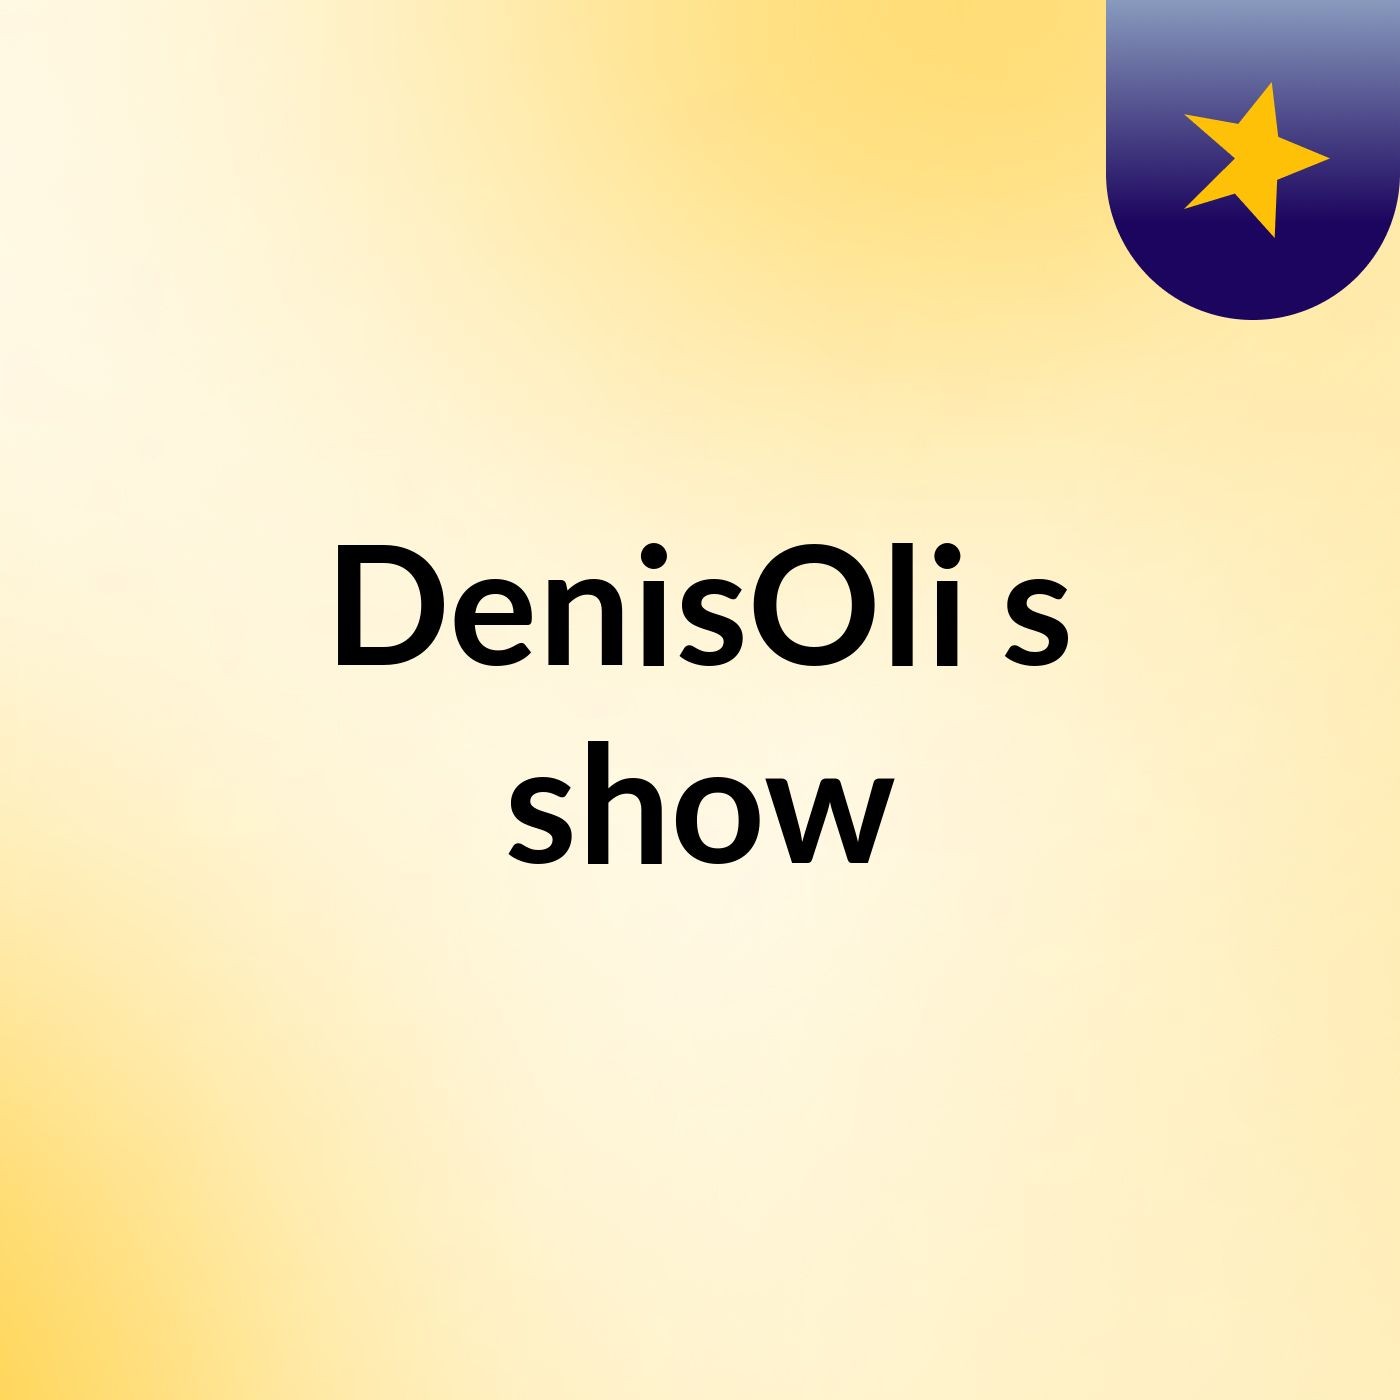 DenisOli's show